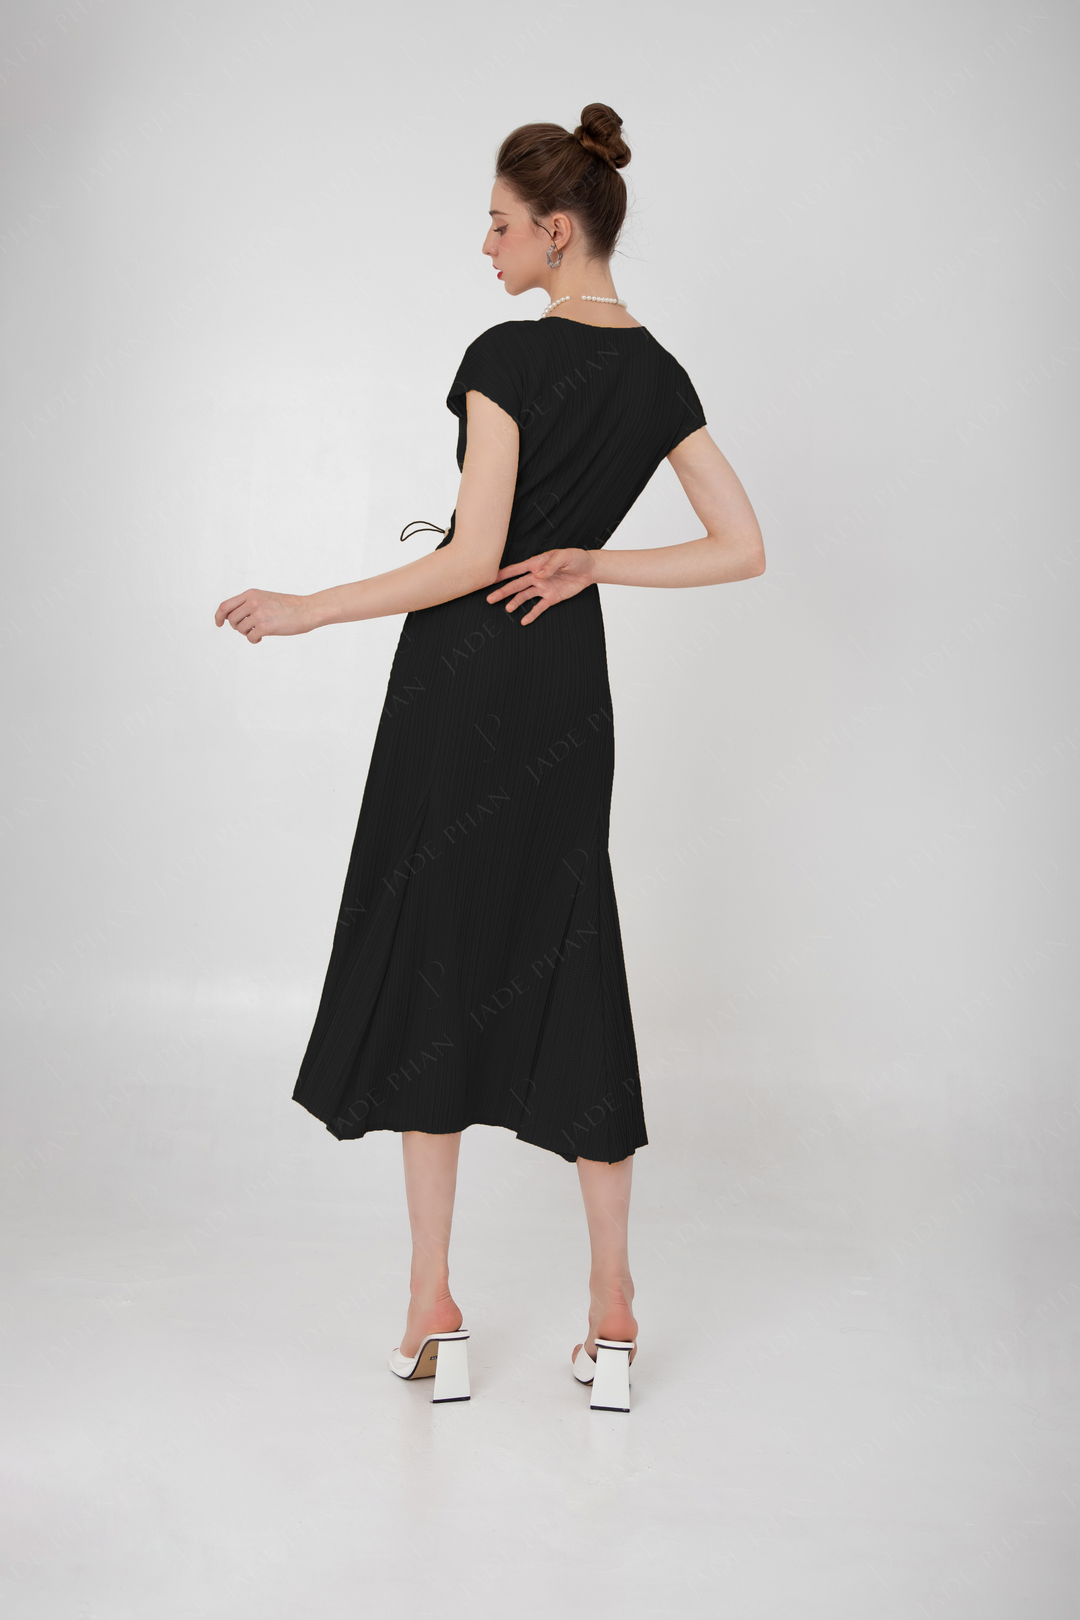 ADELE Pleated Dress - Black